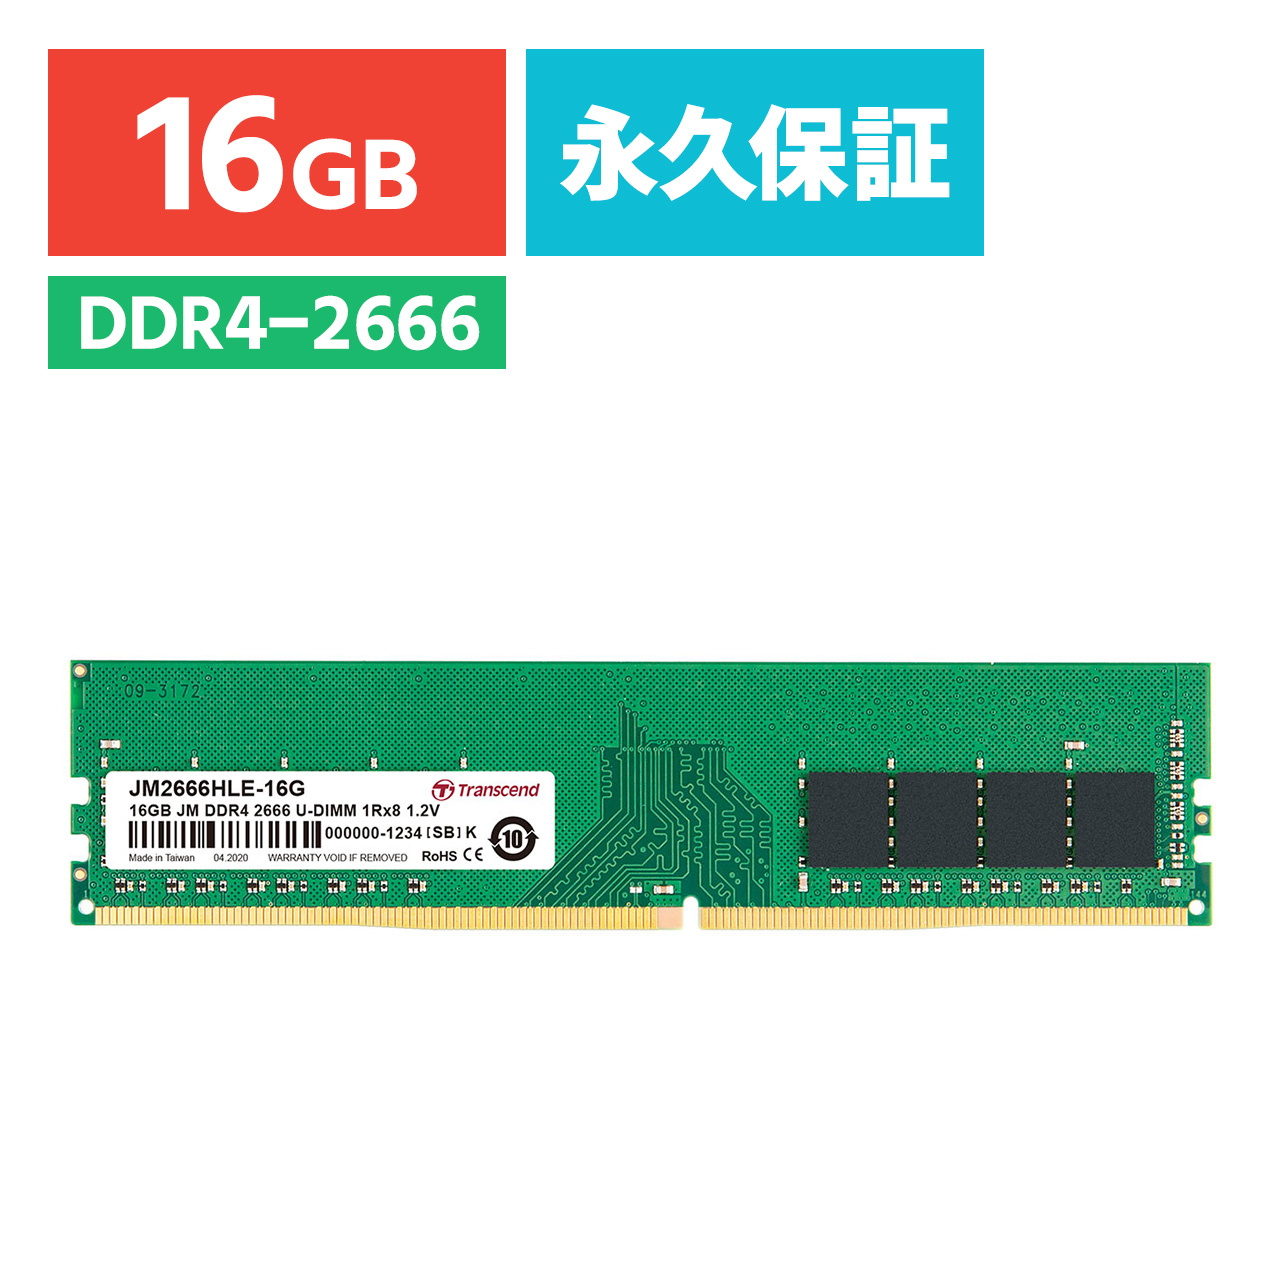 Transcend fXNgbvp 16GB DDR4-2666 PC4-21300 U-DIMM JM2666HLE-16G JM2666HLE-16G